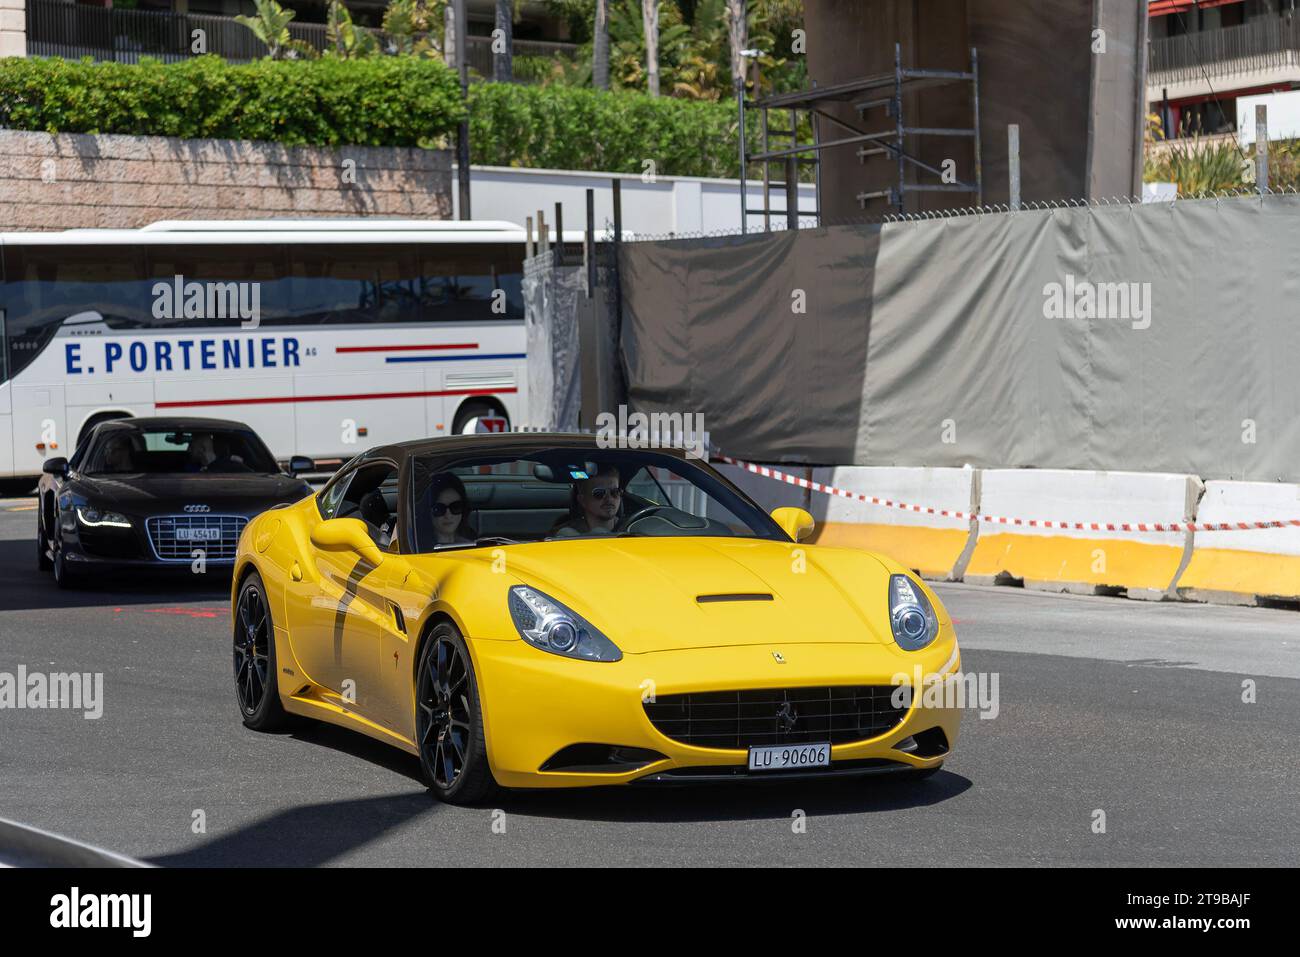 Monaco, Monaco - Yellow Ferrari California driving on the road in the Portier roundabout. Stock Photo